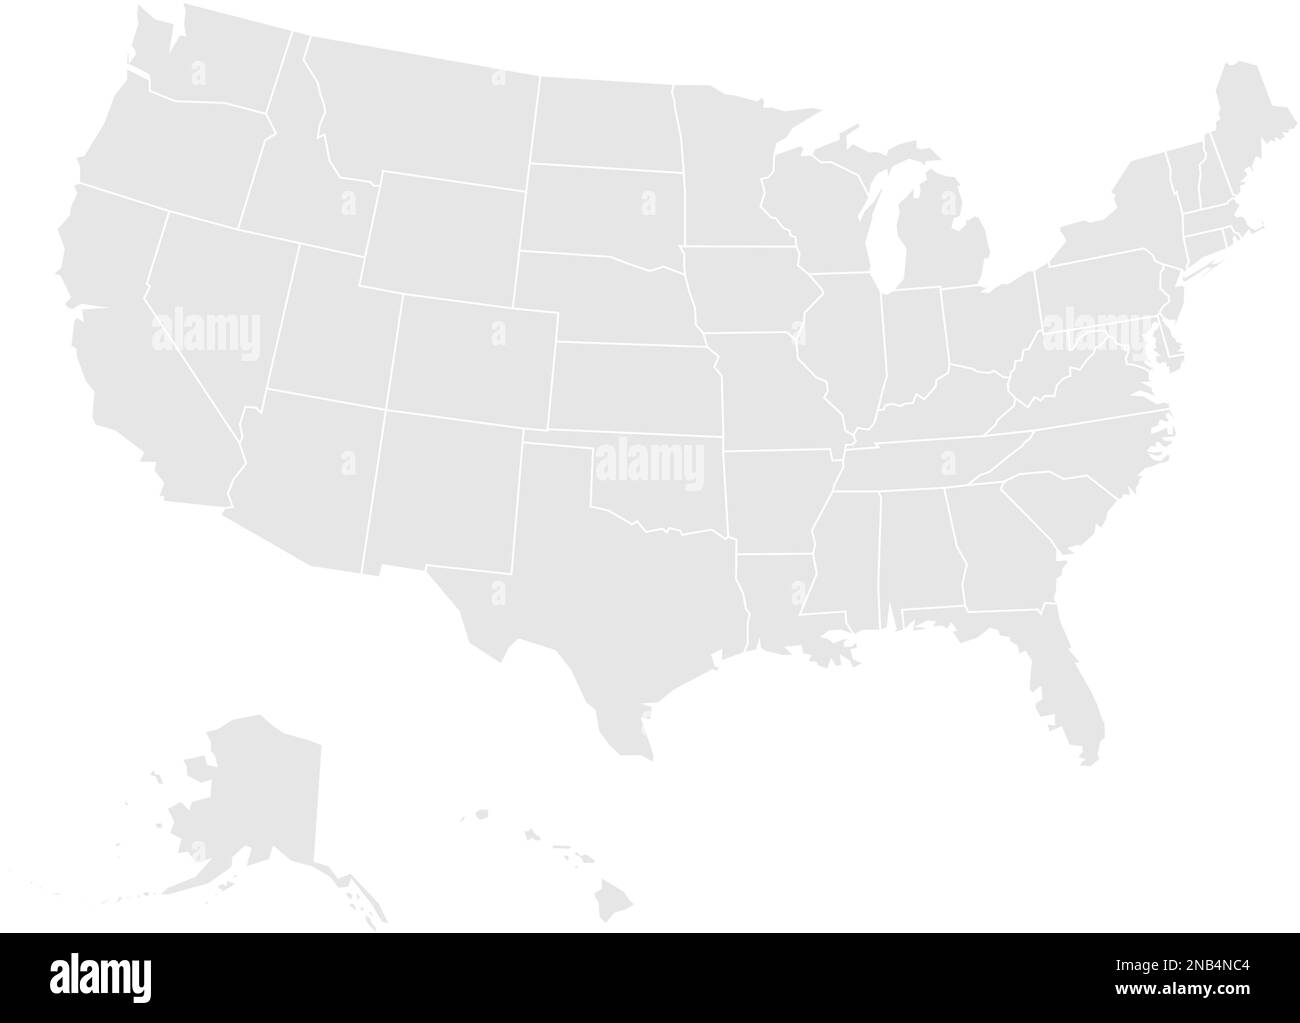 Leere Karte der Vereinigten Staaten von Amerika. Vektordarstellung in Grau auf weißem Hintergrund. Stock Vektor